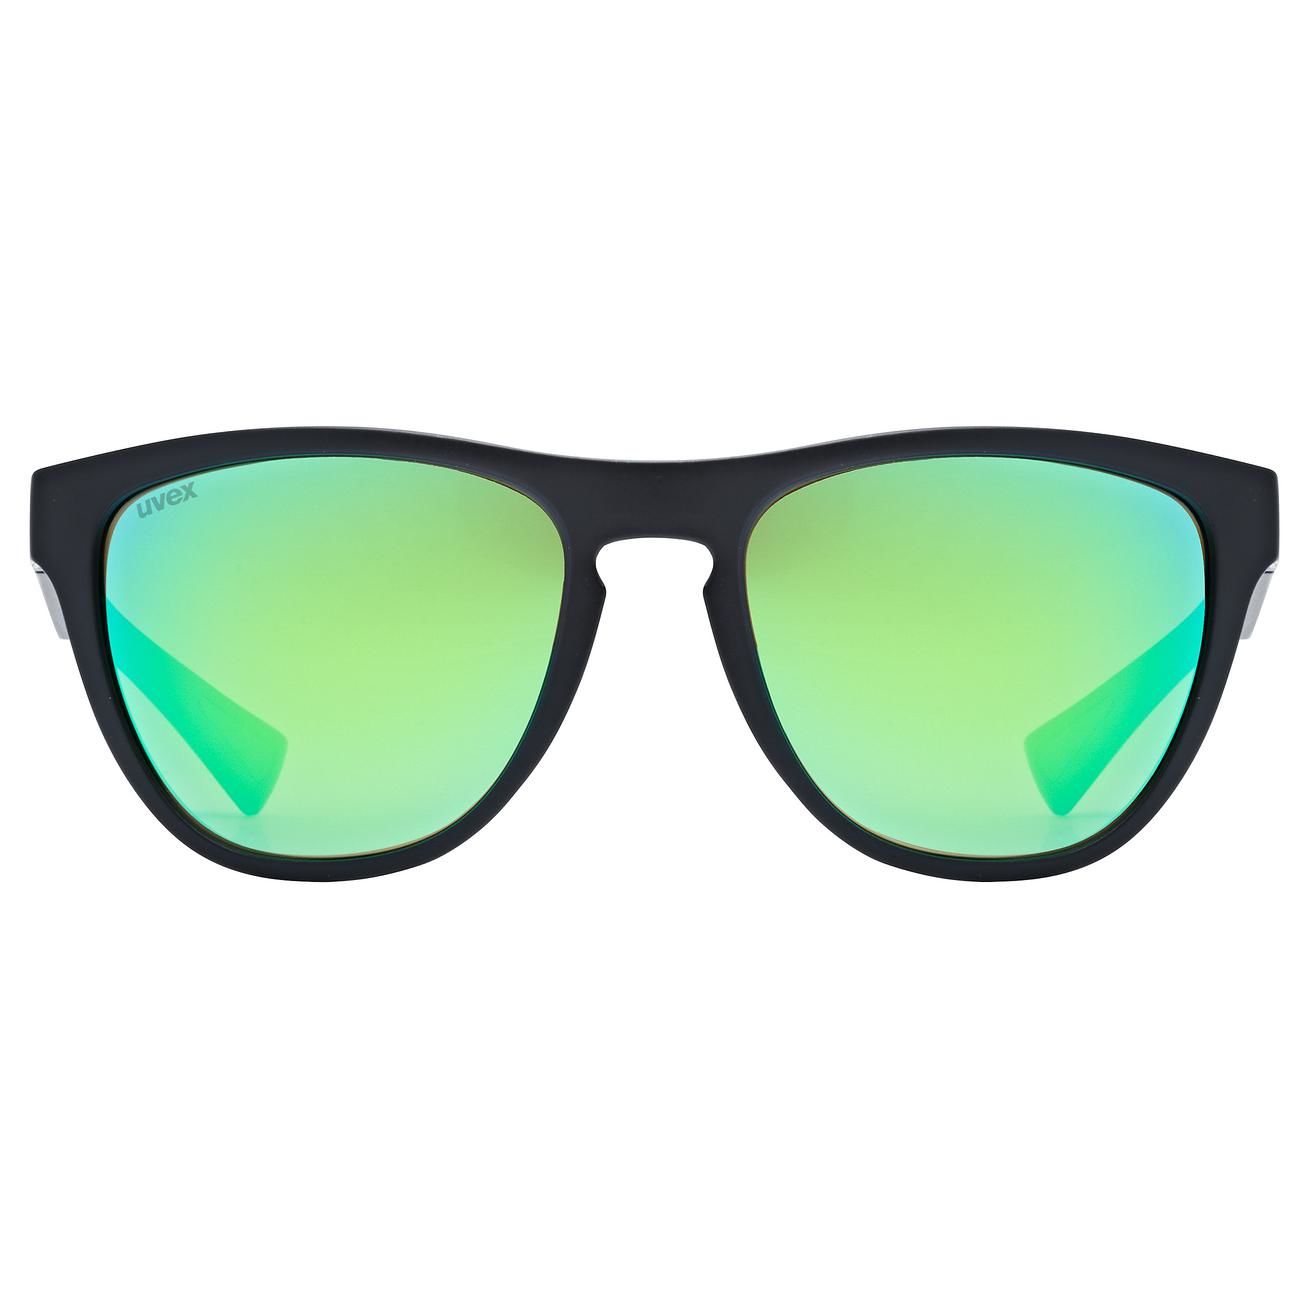 slnečné okuliare uvex esntl spirit black matt/green